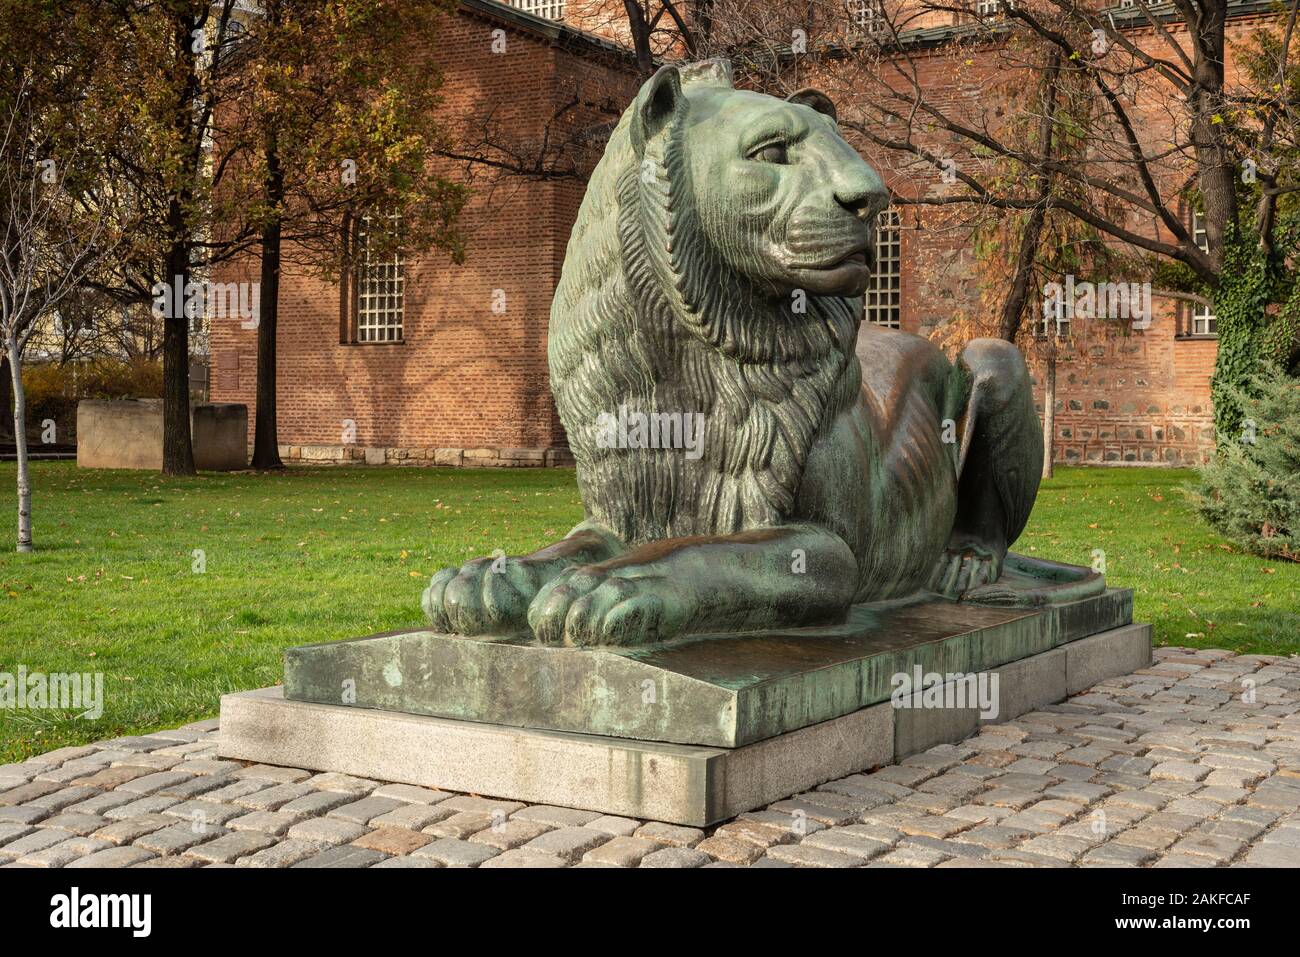 Detaillierte Skulptur des Löwen als Nationalsymbol Bulgariens am Denkmal des Unbekannten Kriegers, wie sie das Wahrzeichen von Sofia Bulgarien besuchen muss Stockfoto